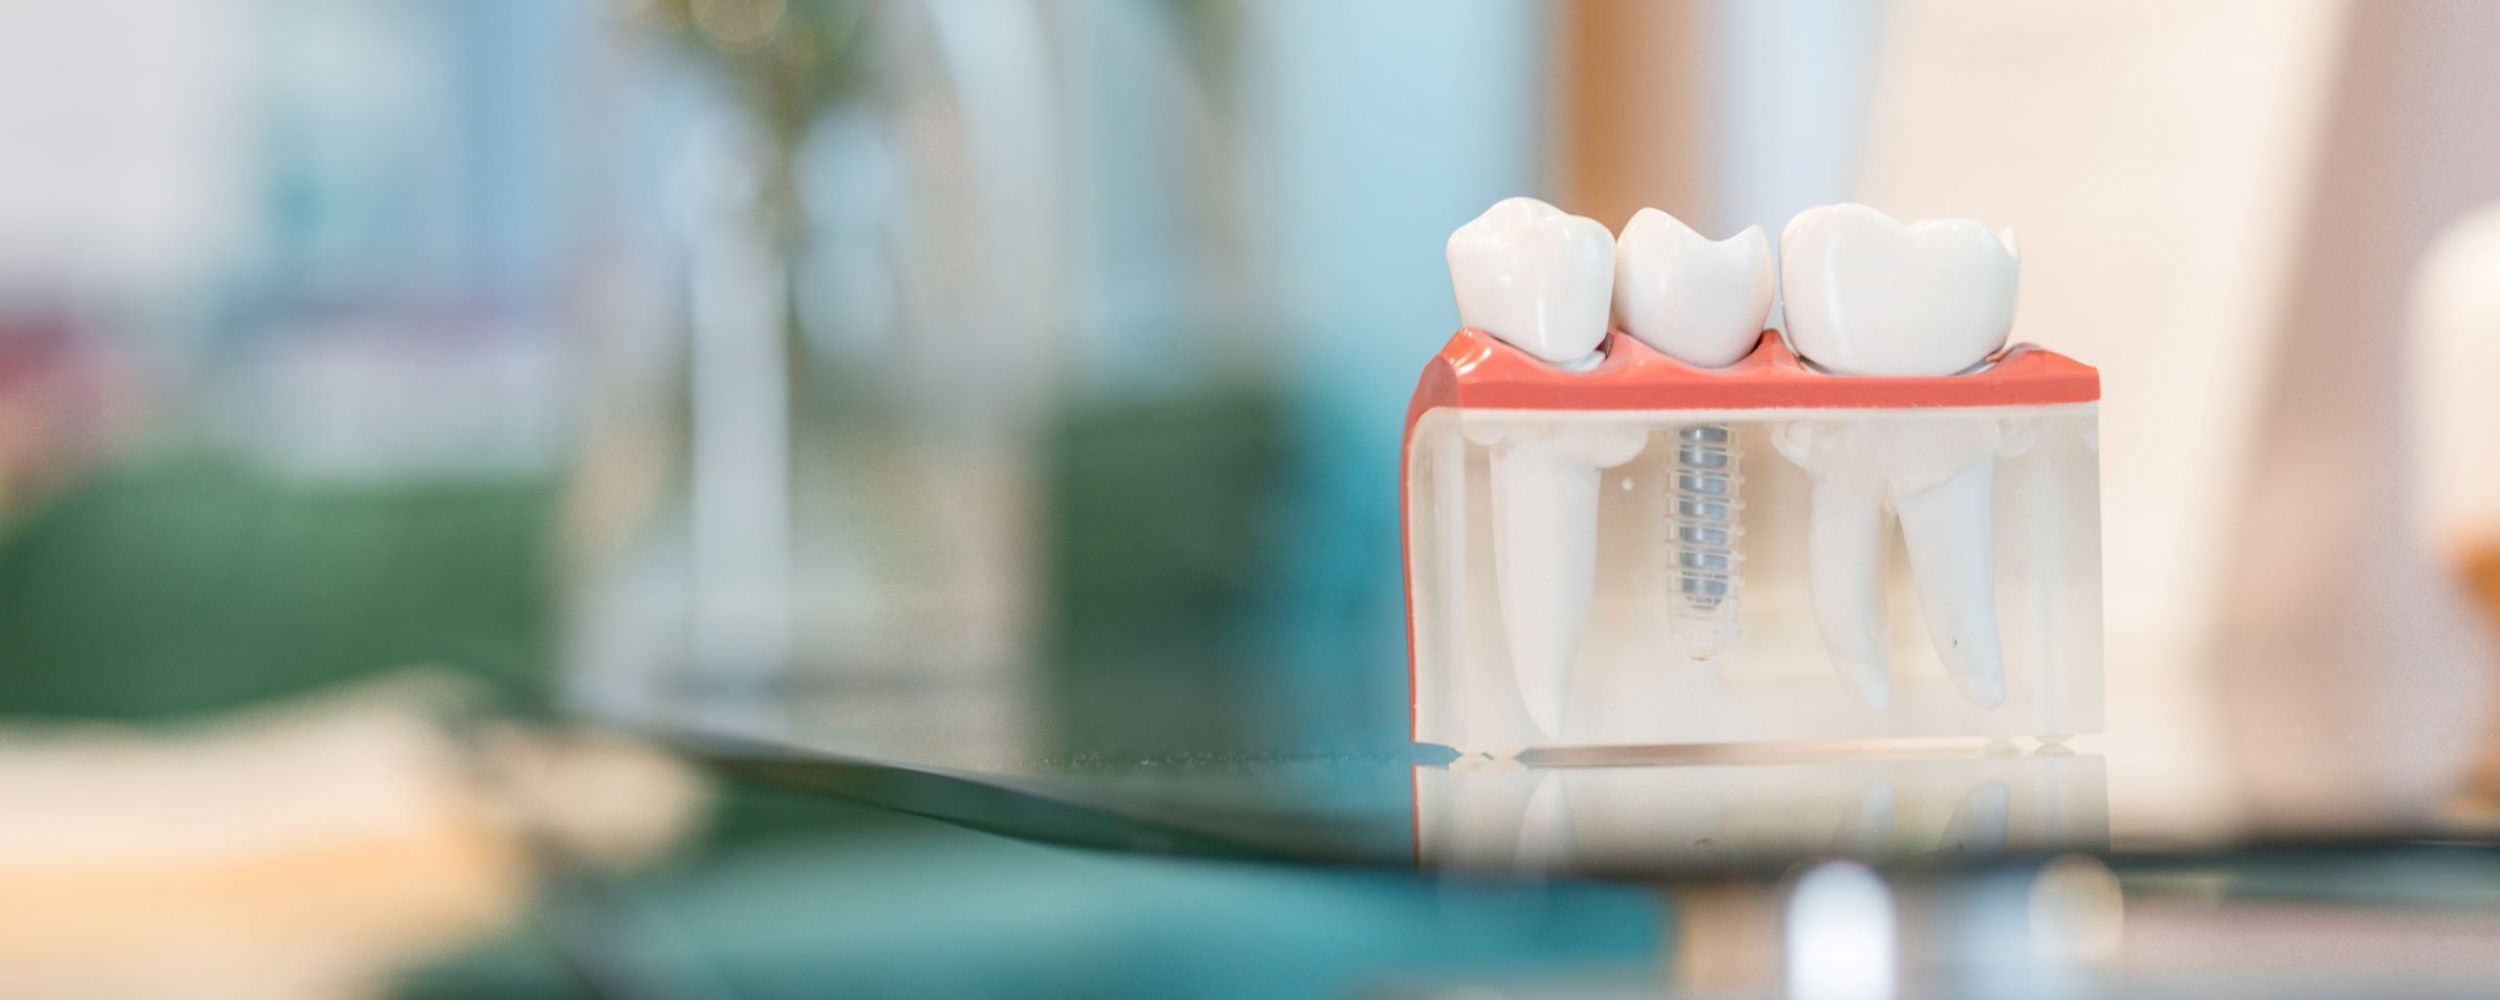 Multiple teeth dental implants